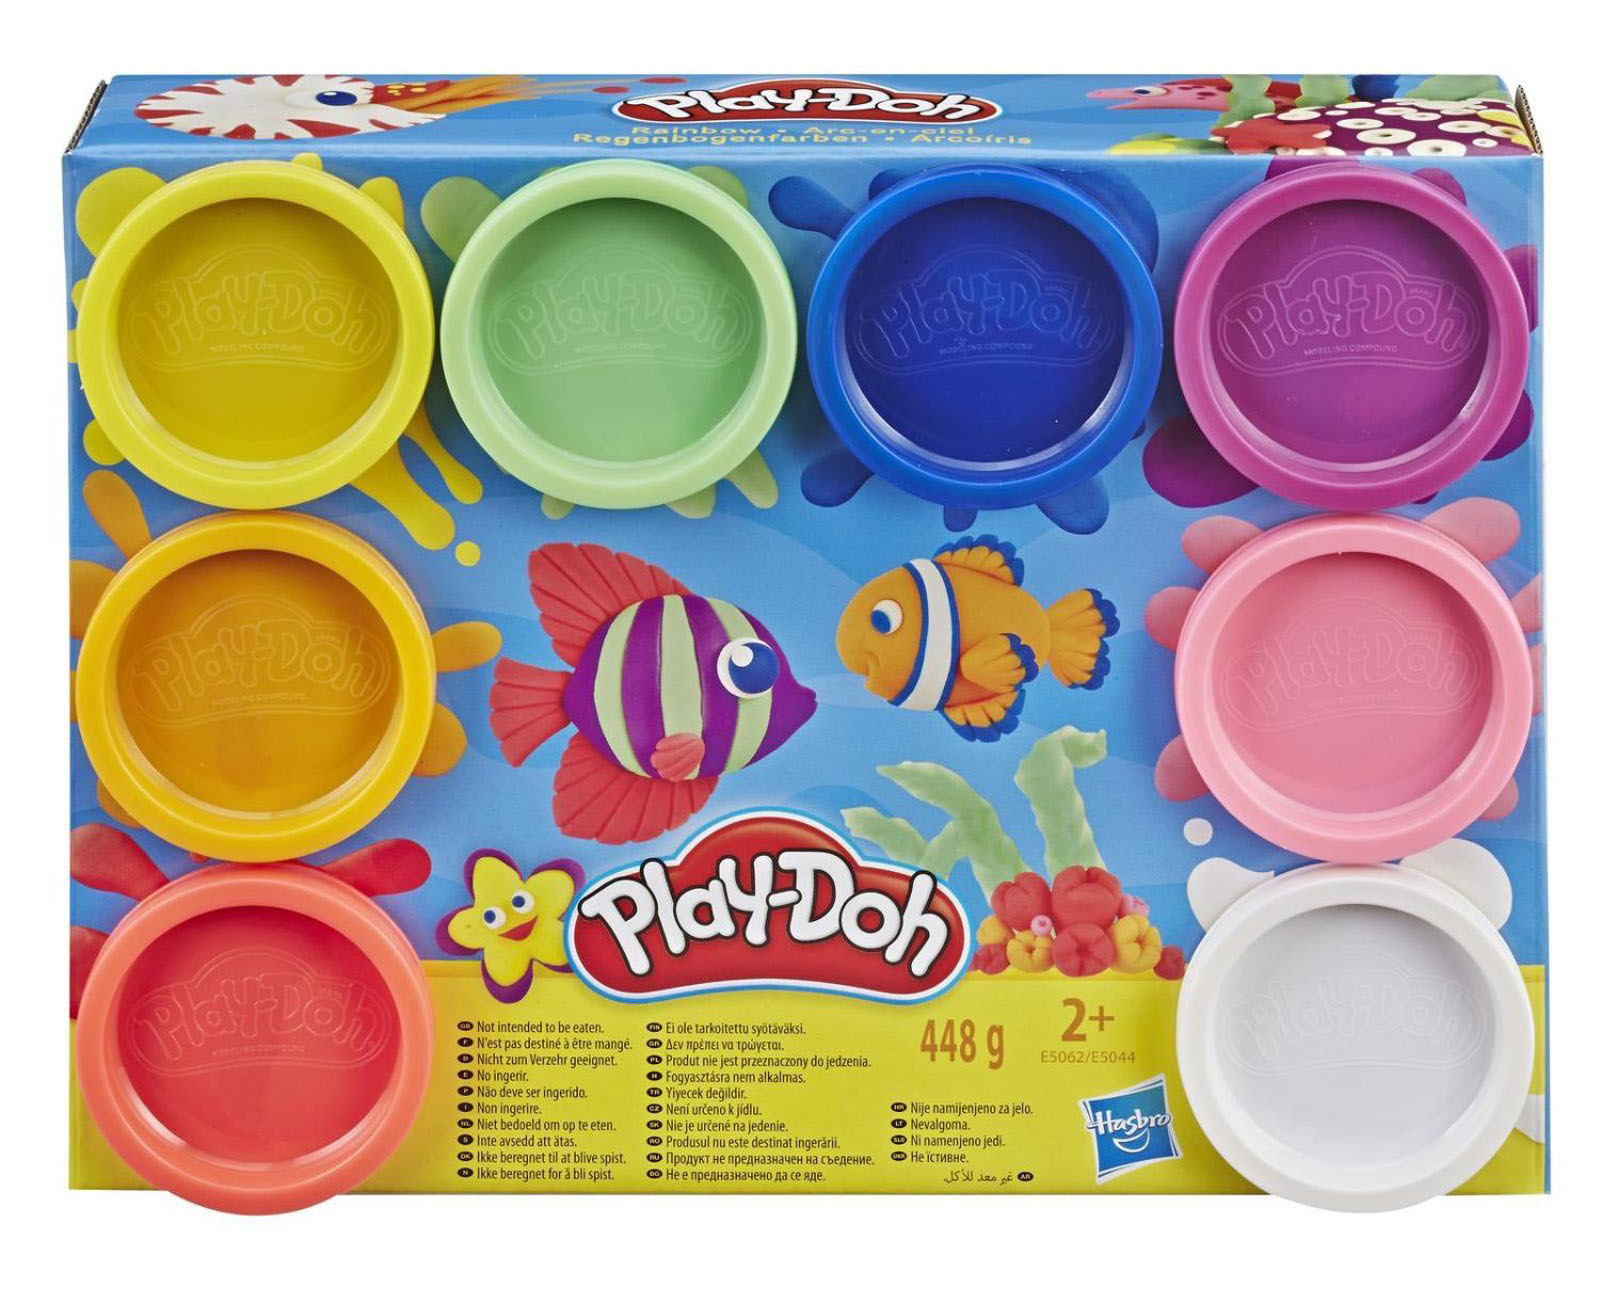 Купить наборы пластилина. Масса для лепки Play-Doh набор Rainbow 8 цветов e5062/e5044. Масса для лепки Play-Doh набор Rainbow 8 цветов. Плей до e2124. Play-Doh набор для лепки №1 e4902eu40.